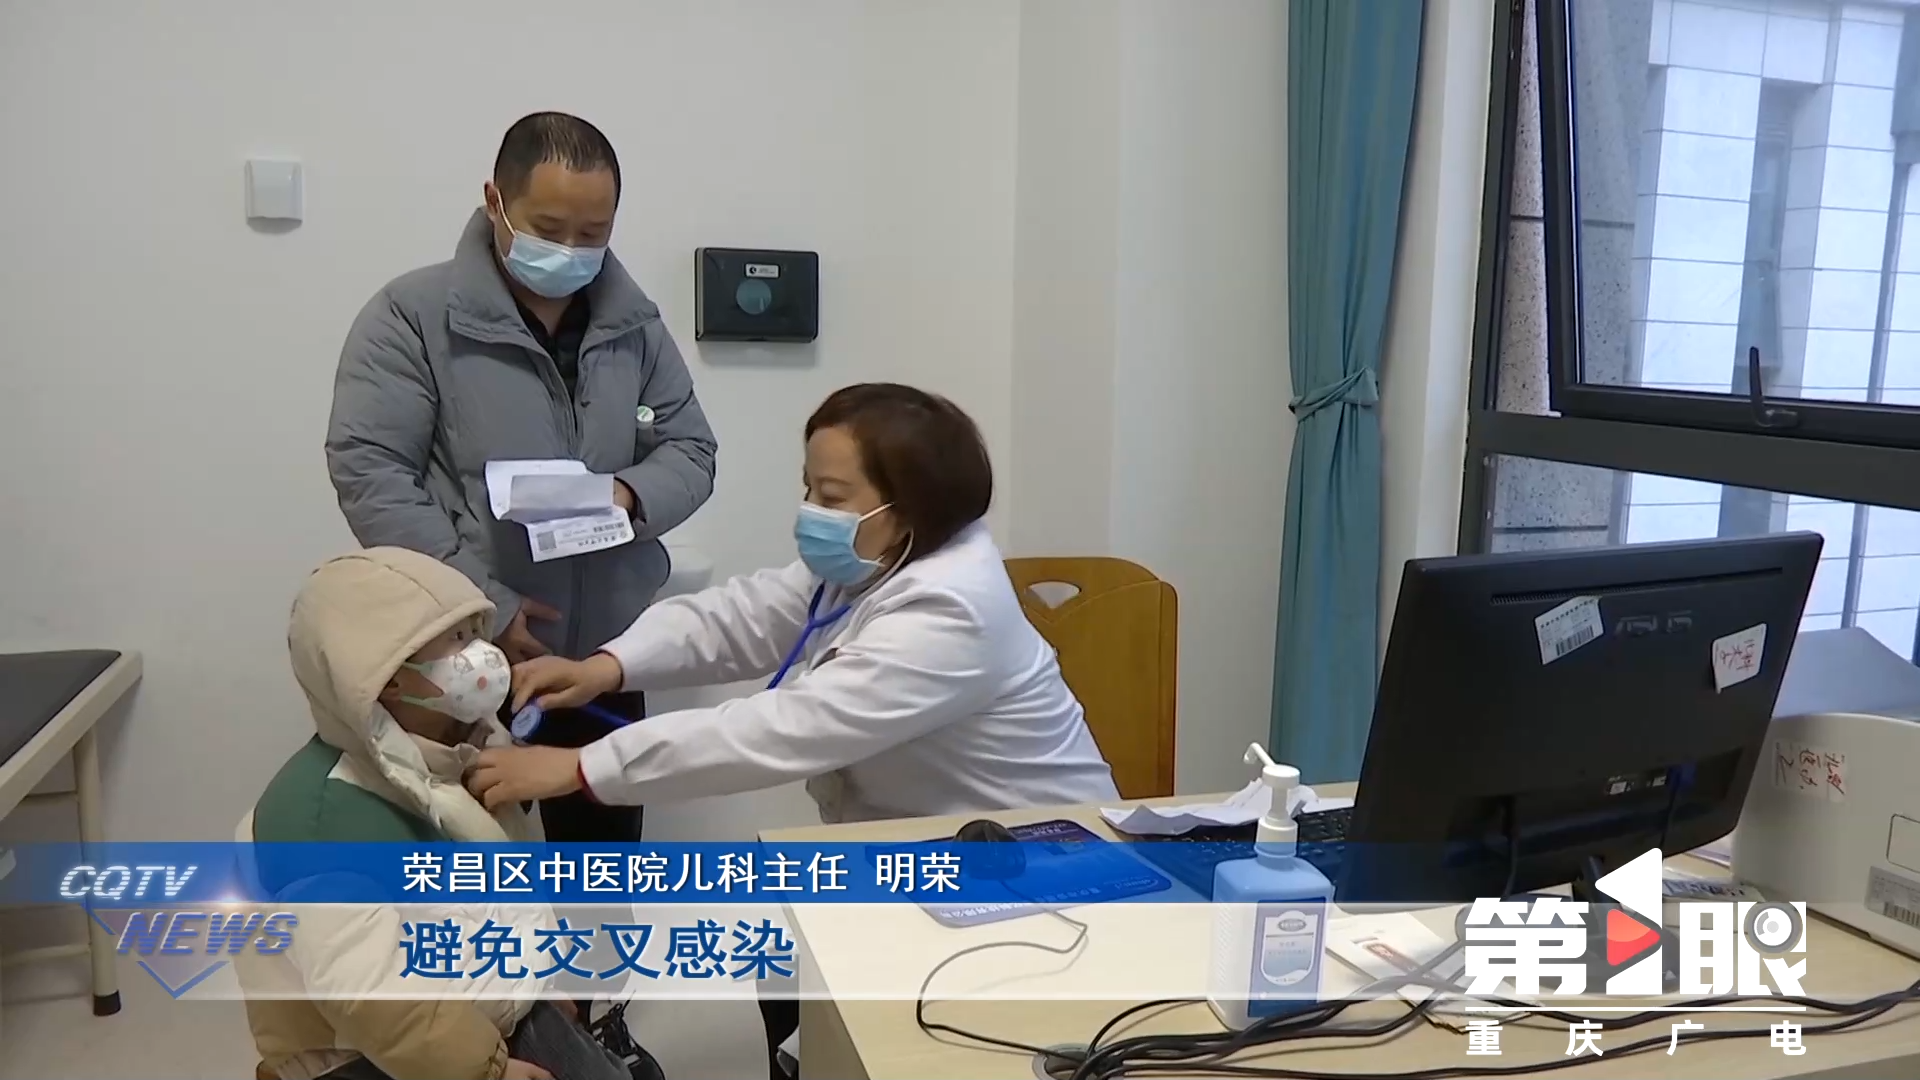 方便就近就诊！重庆共有1000余家医疗机构提供儿童诊疗2